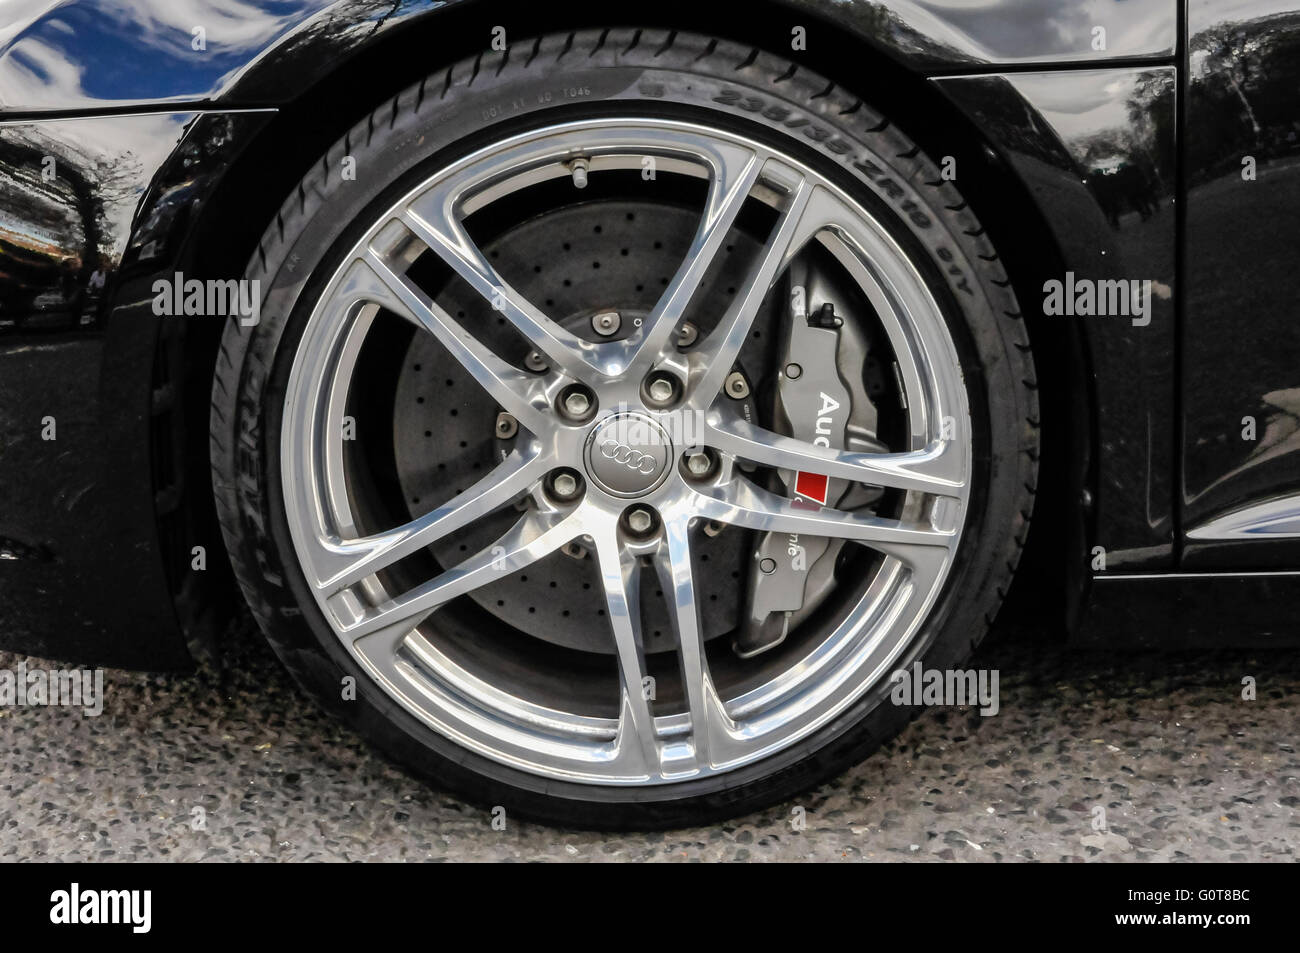 Scheibenbremse Bremssattel am Vorderrad von einem Audi R8 Quattro  Stockfotografie - Alamy